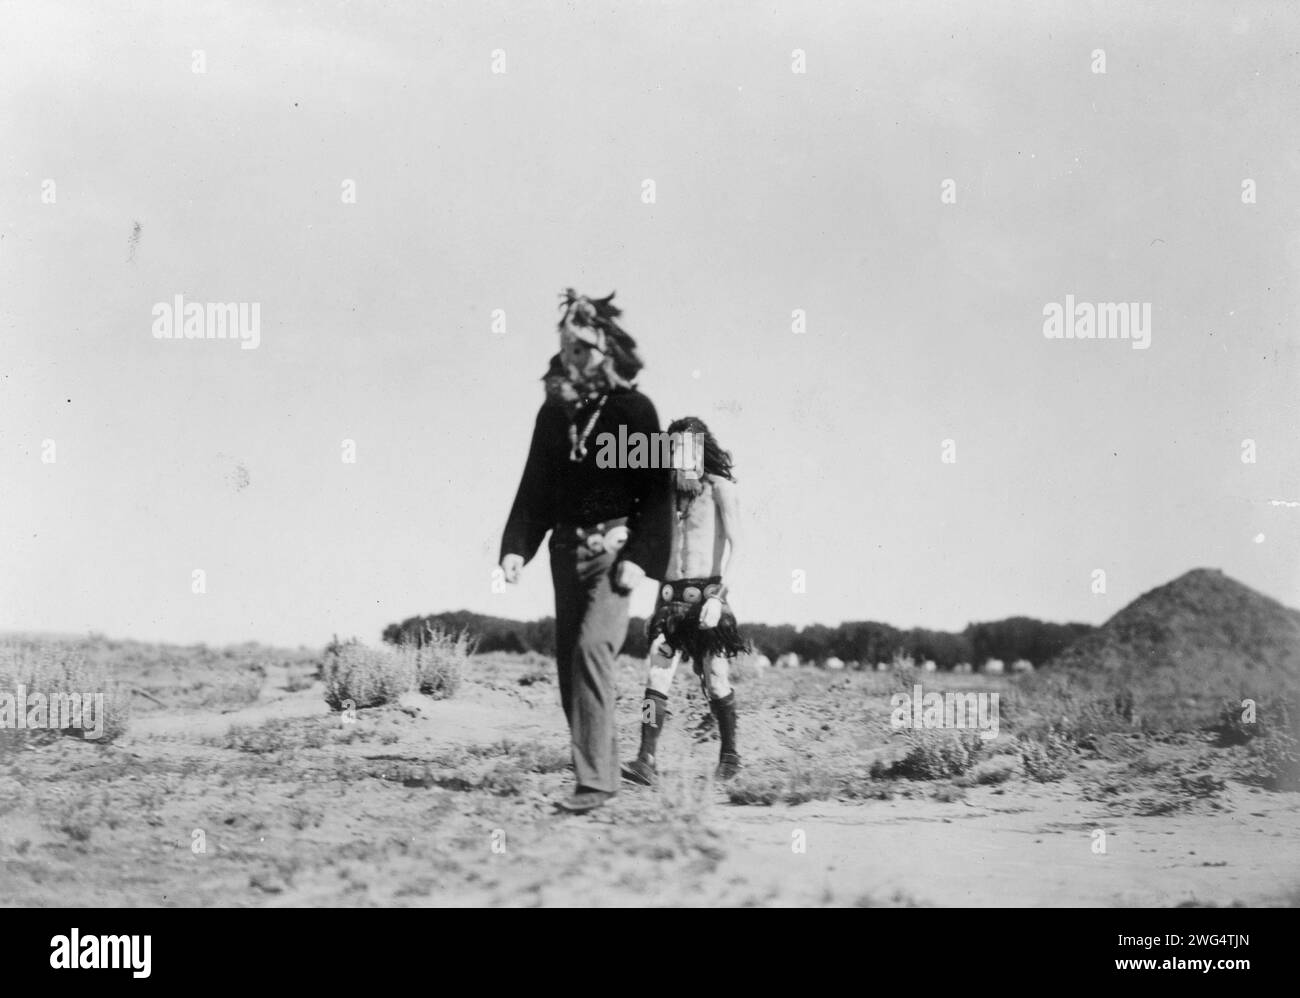 Haschelti und Haschebaad, 1905. Zwei Navajo-Männer verkörpern während der Yeibichai-Zeremonie zwei Yeibichai, Haschelti (sprechender Gott) und Haschebaad (Göttin). Stockfoto